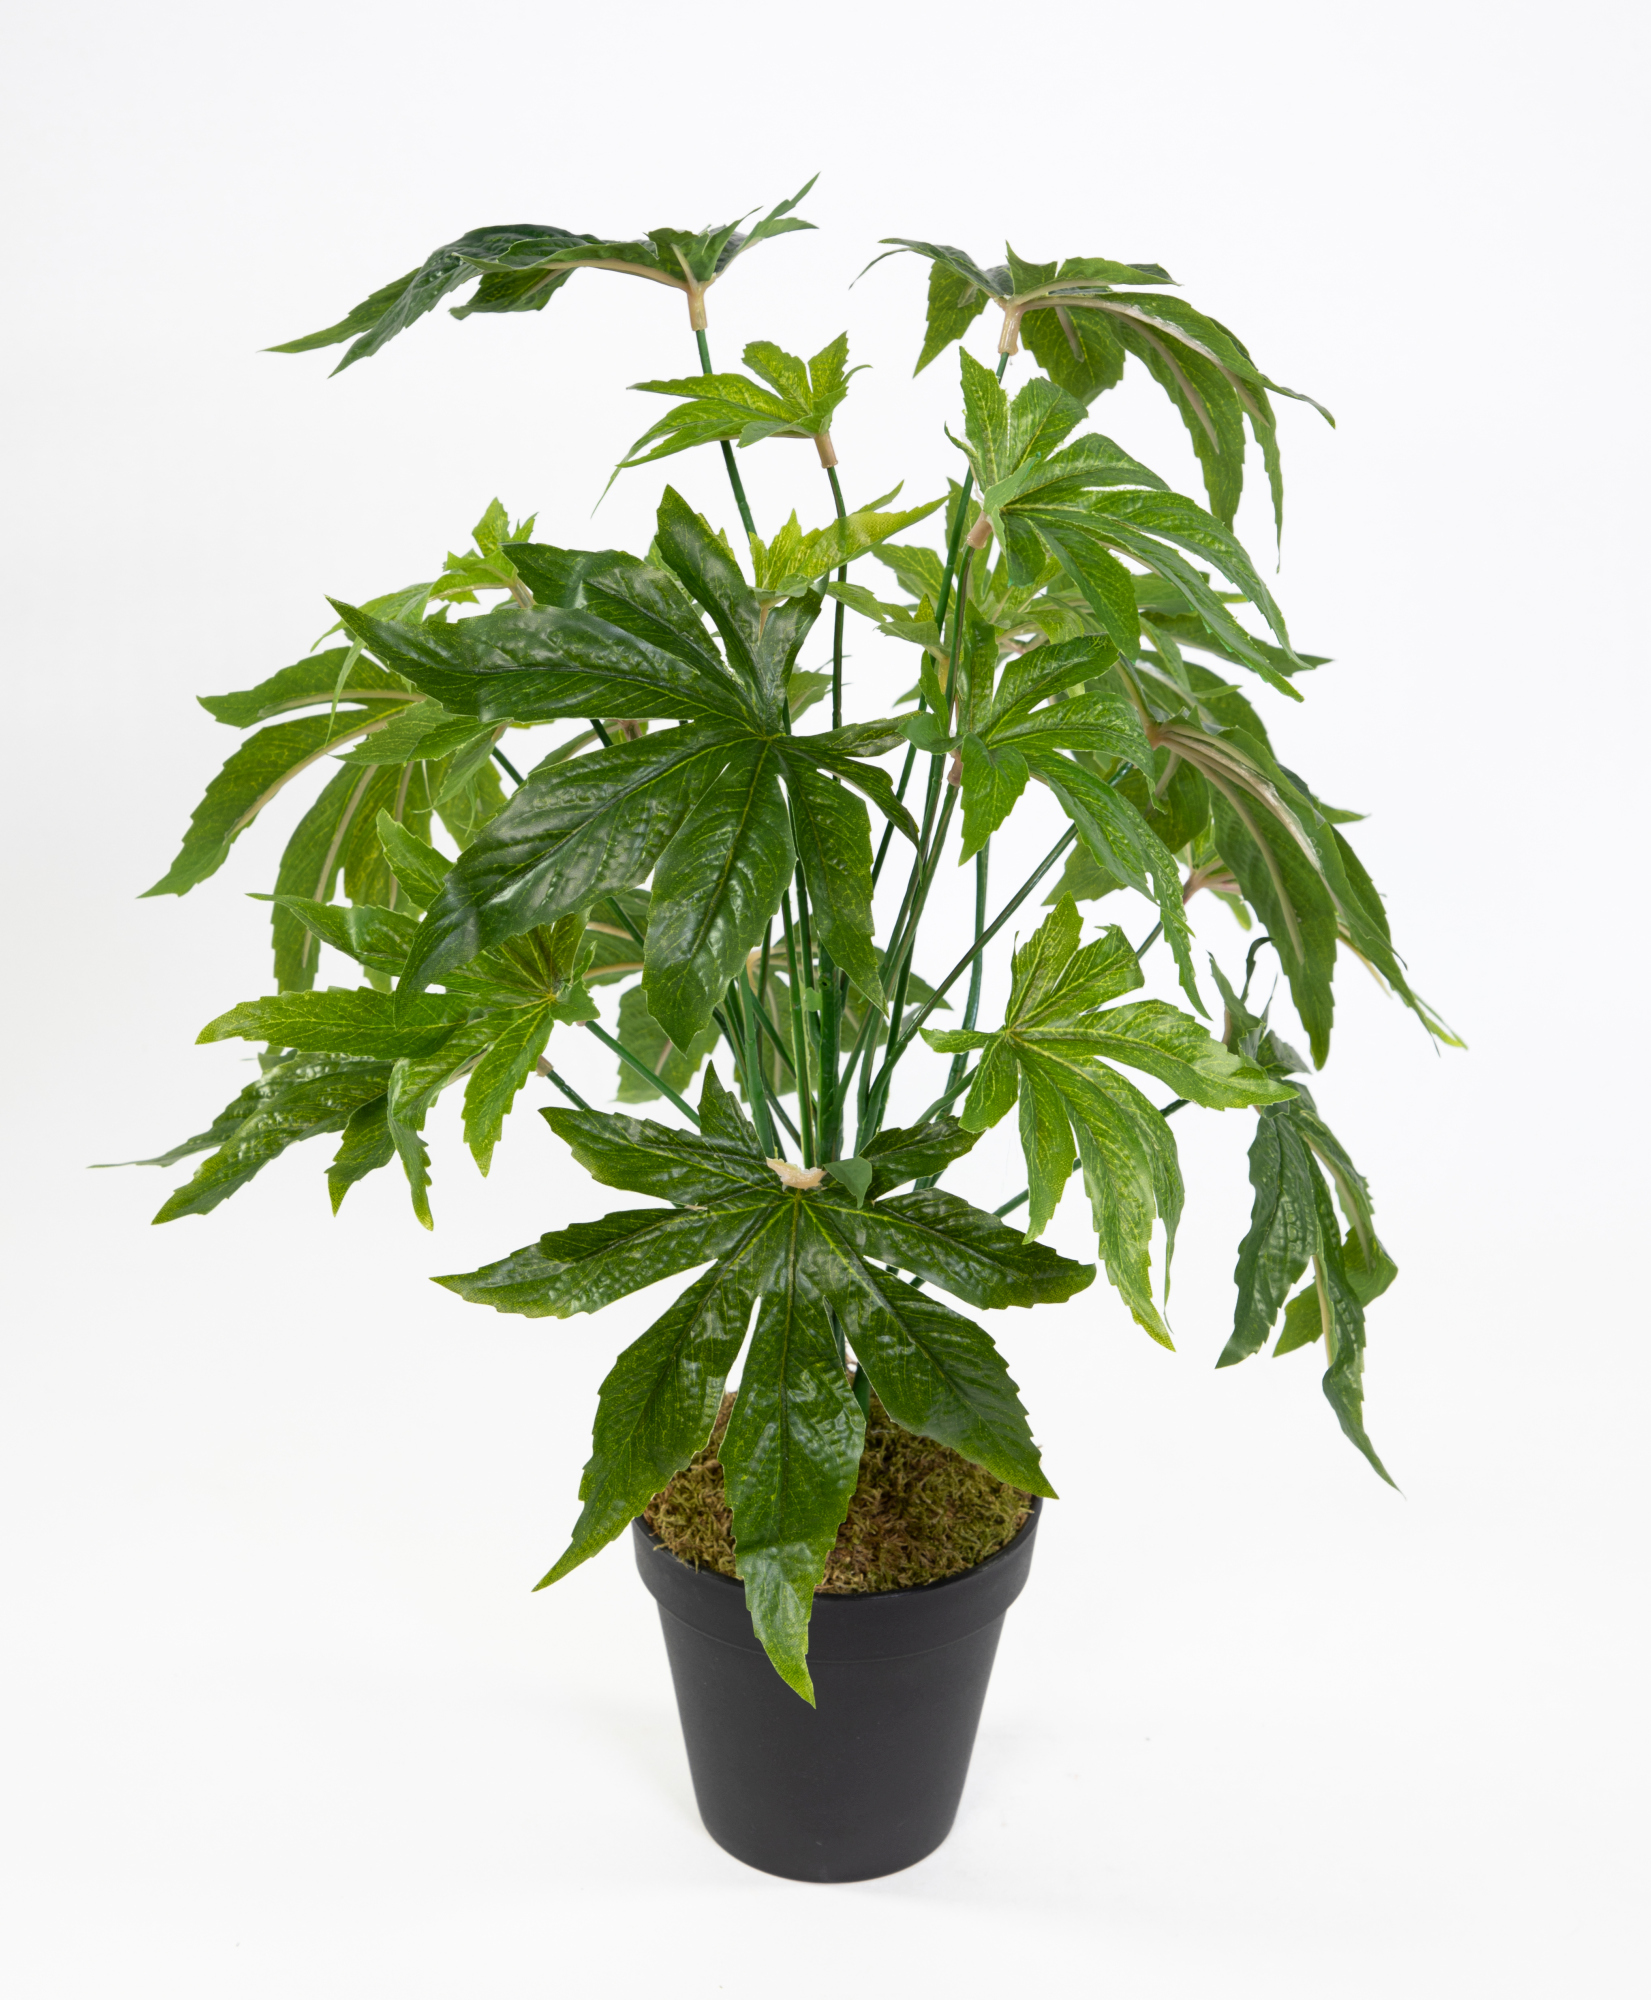 Hanfpflanze / Cannabispflanze 42cm im Topf JA Kunstpflanzen künstliche Pflanzen Hanf Cannabis Weed